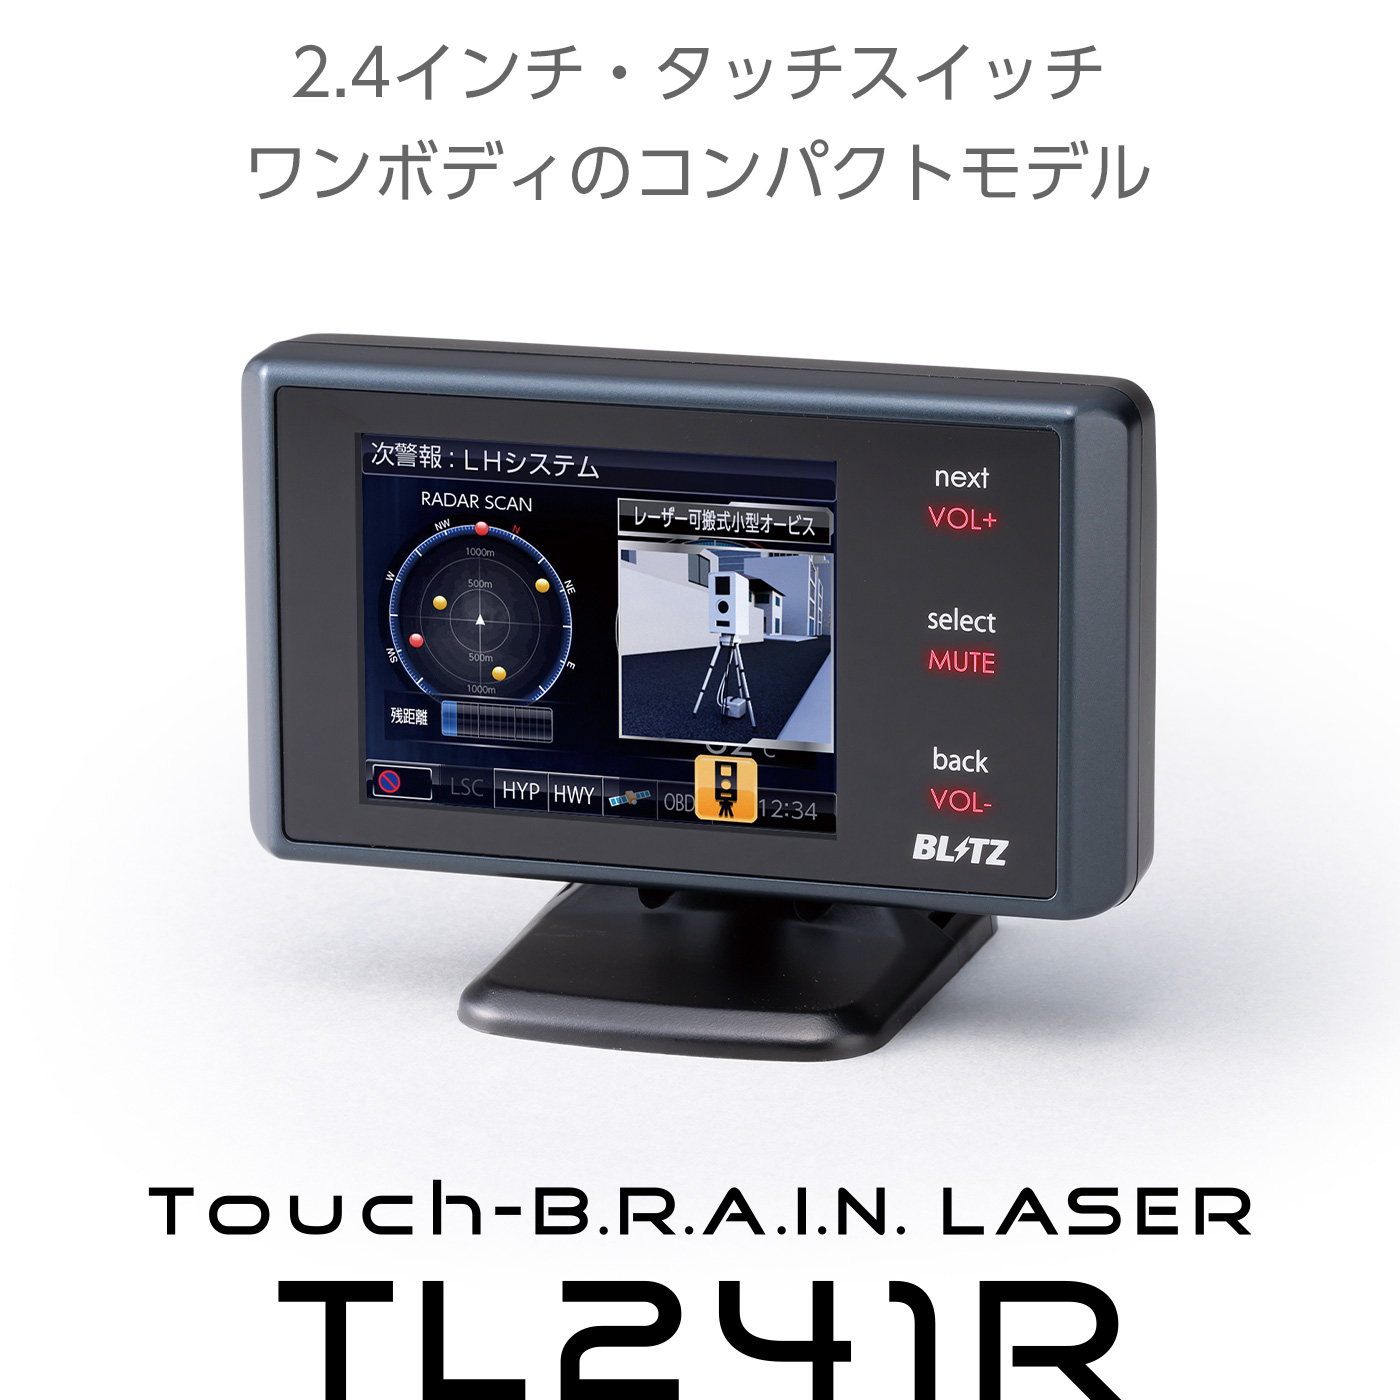 Touch-B.R.A.I.N. LASER 241R